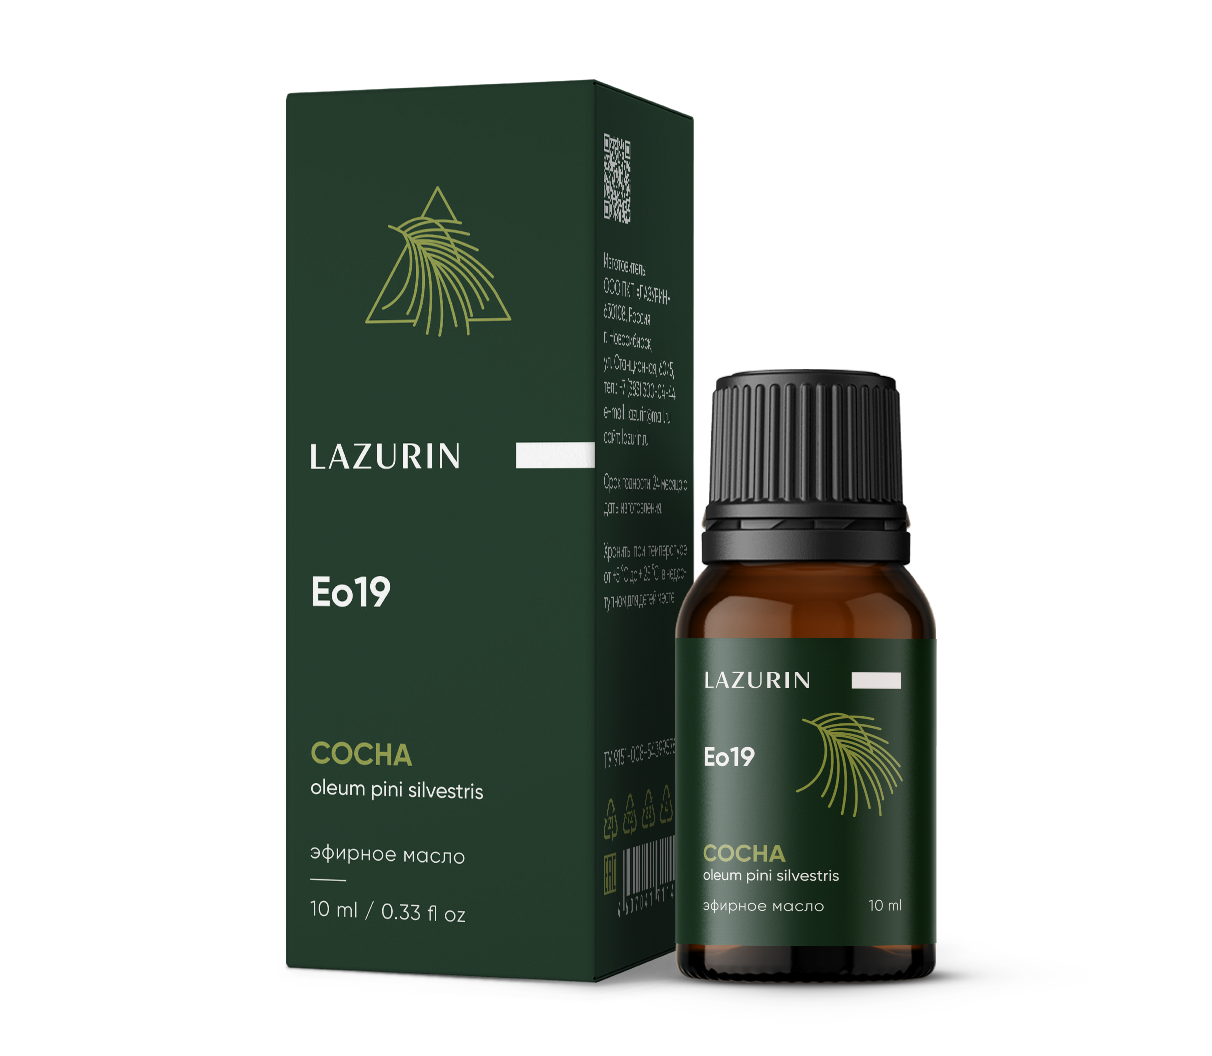 Pine essential oil